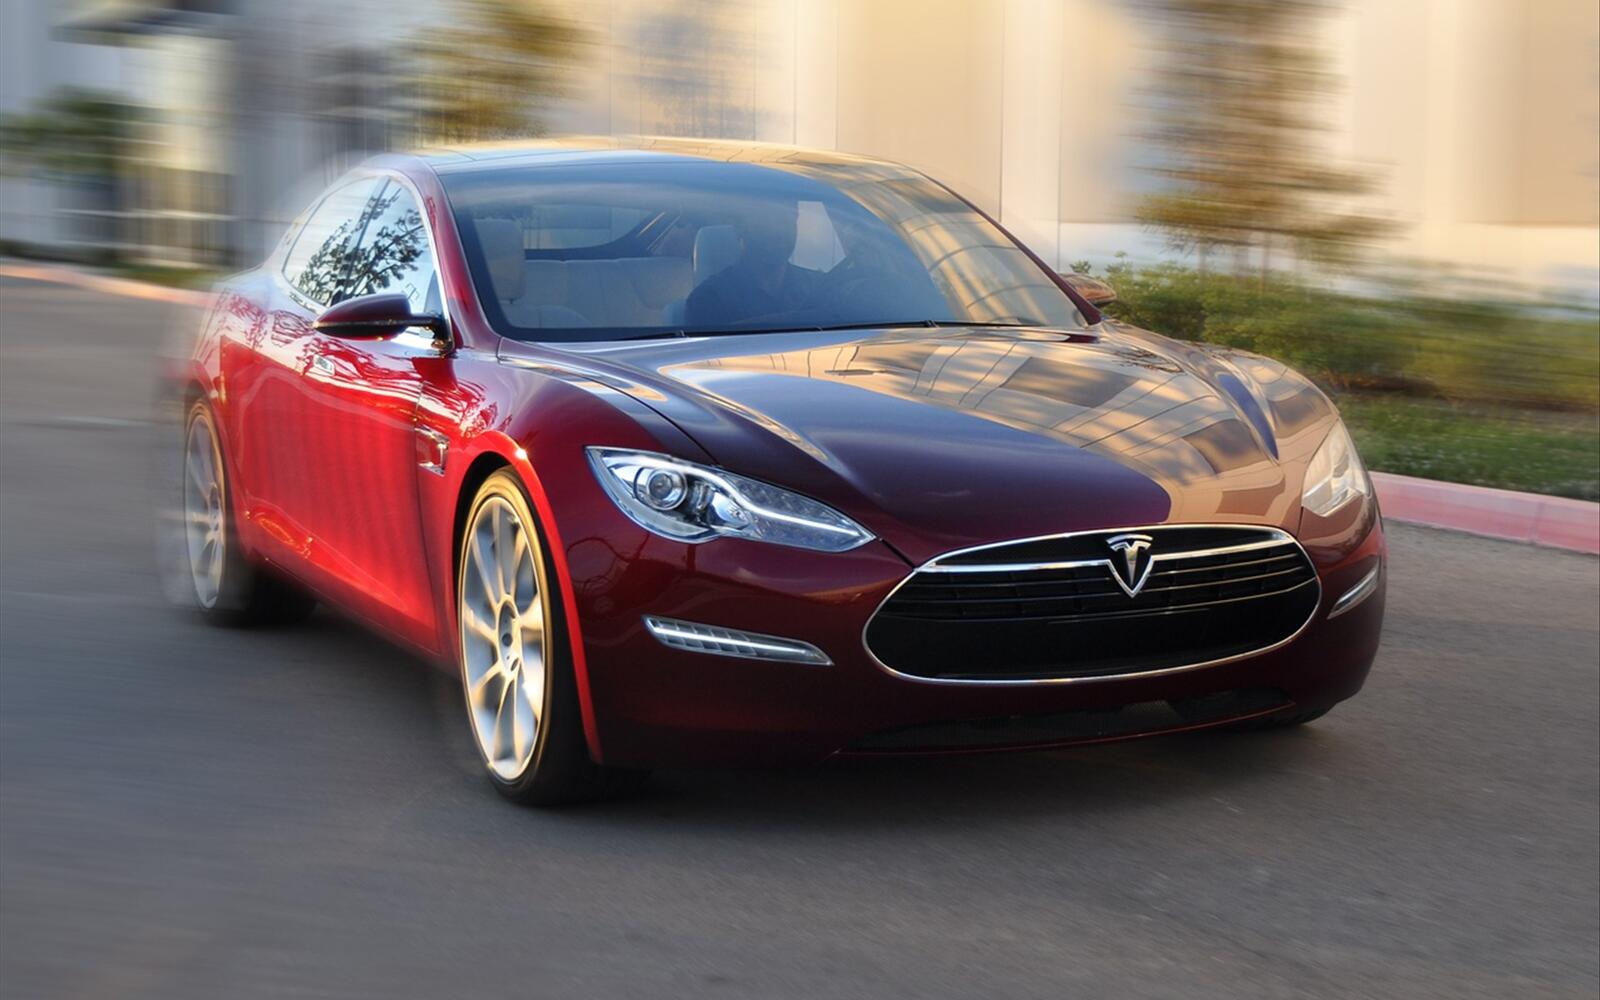 Бесплатное фото Tesla model s красного цвета